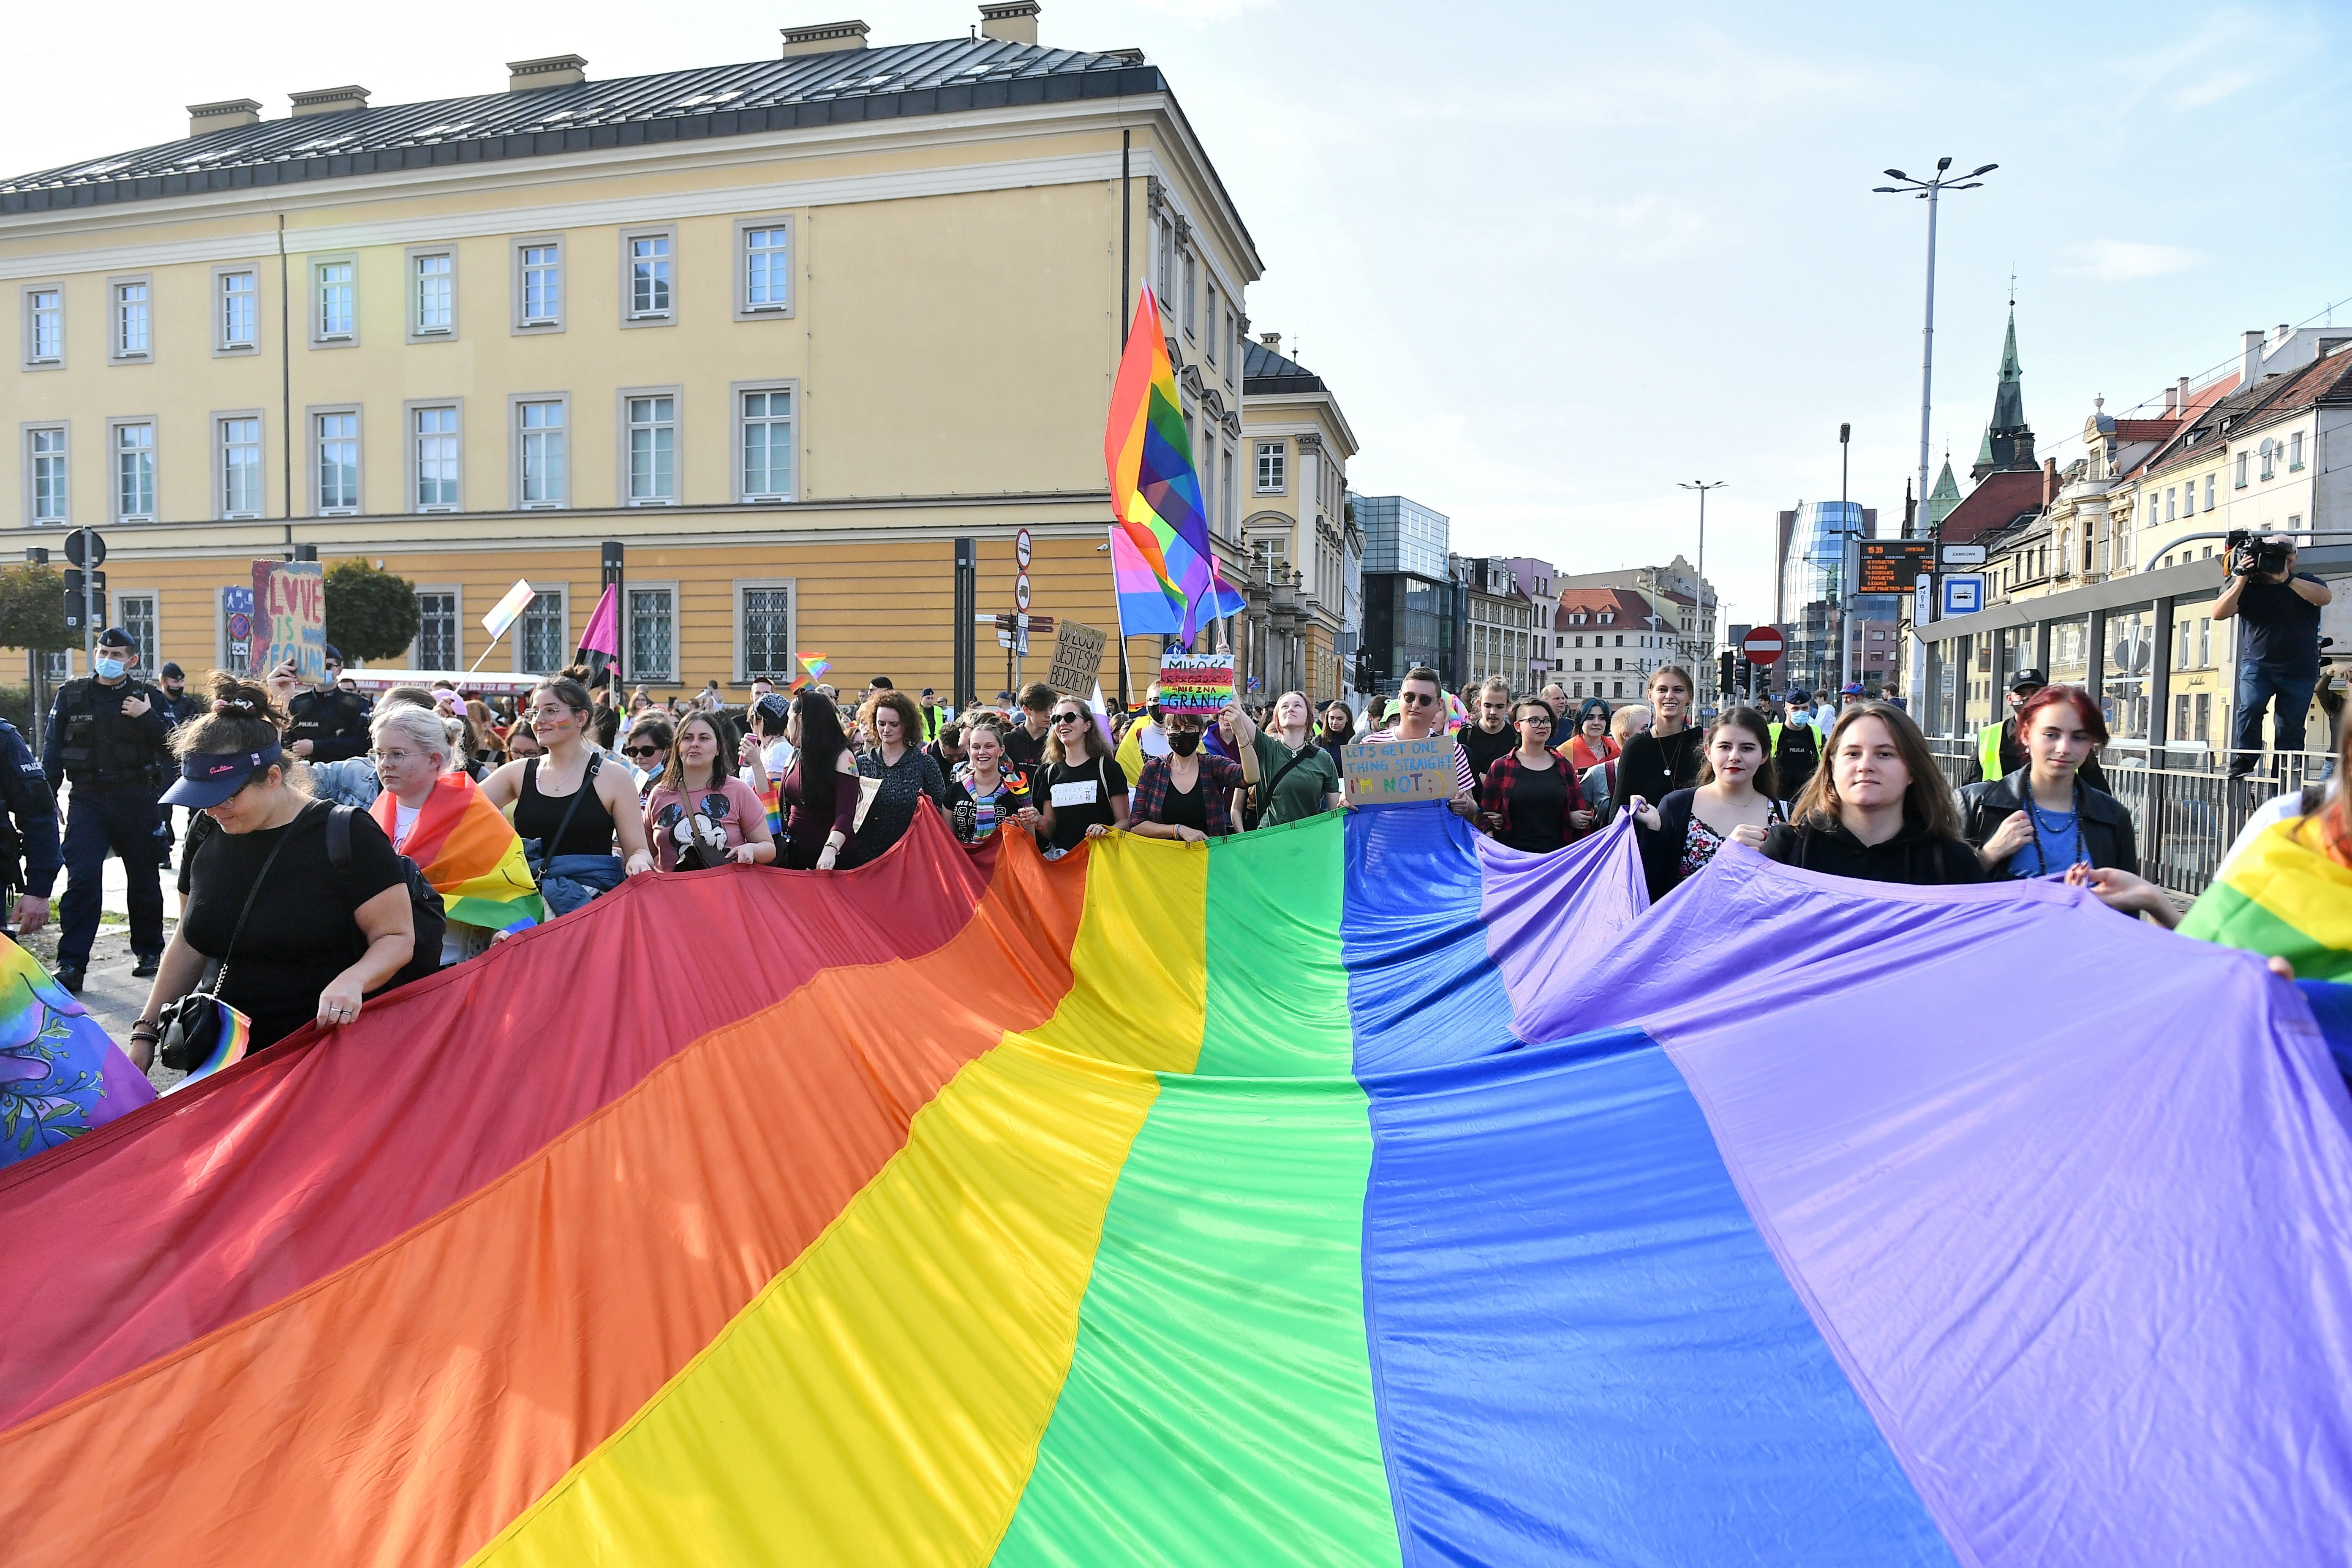 Vista de una bandera del colectivo LGBT. Fotografía de archivo. EFE/Maciej Kulczynski
